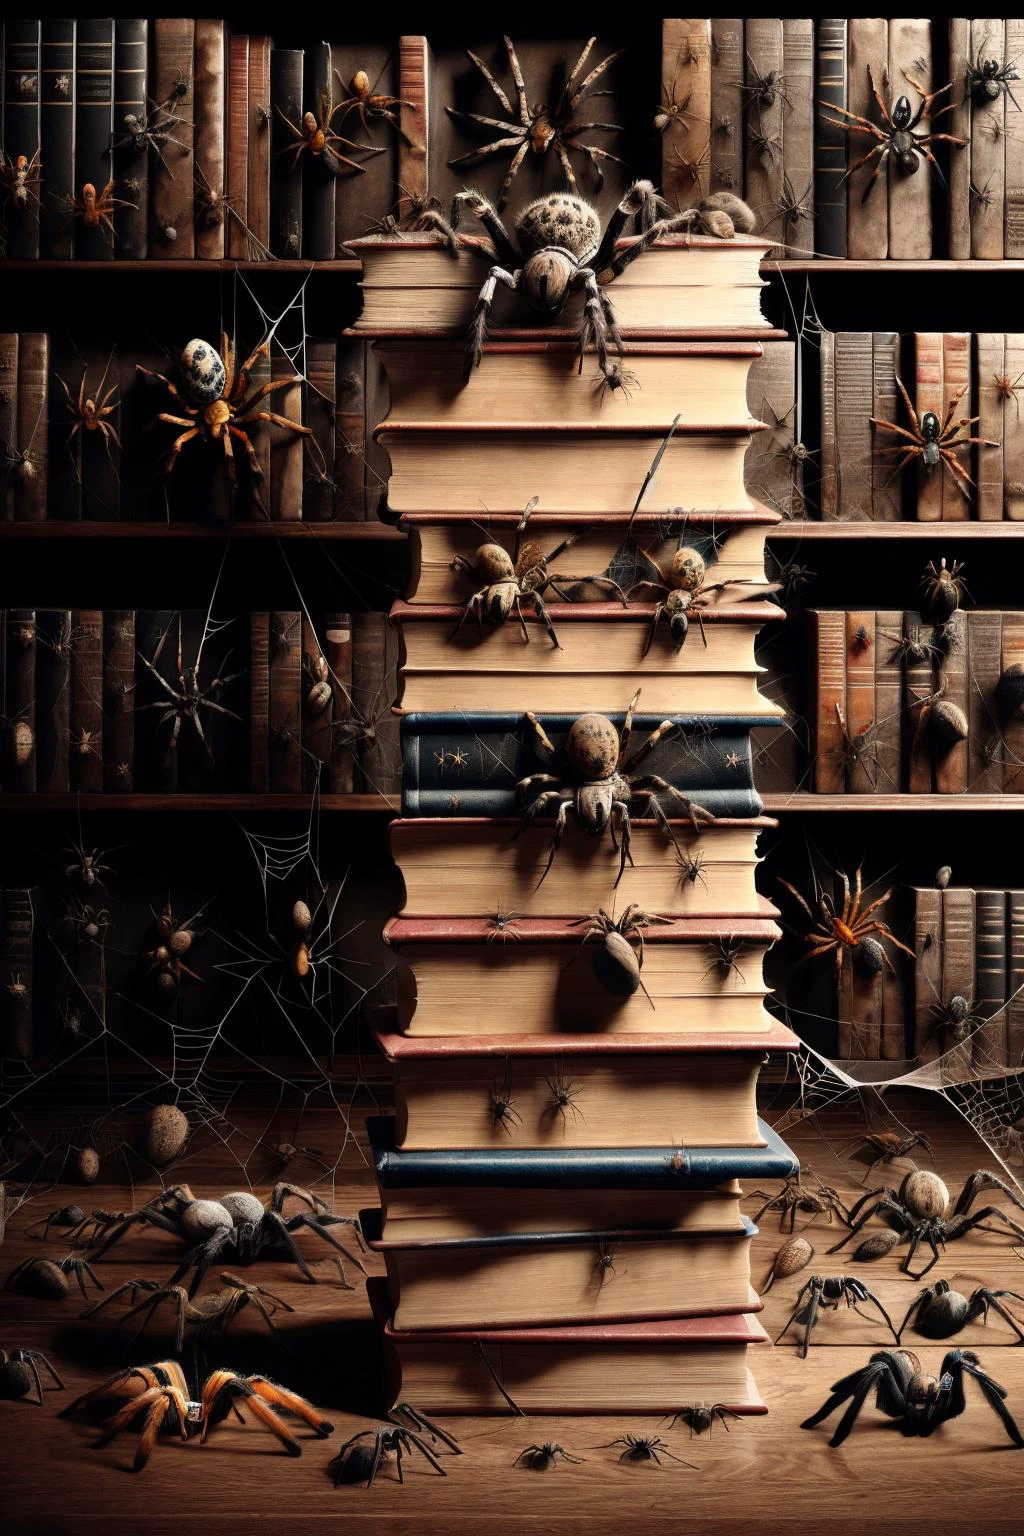 Ais-spiderz บนกองหนังสือ, ในห้องสมุดที่เงียบสงบ 